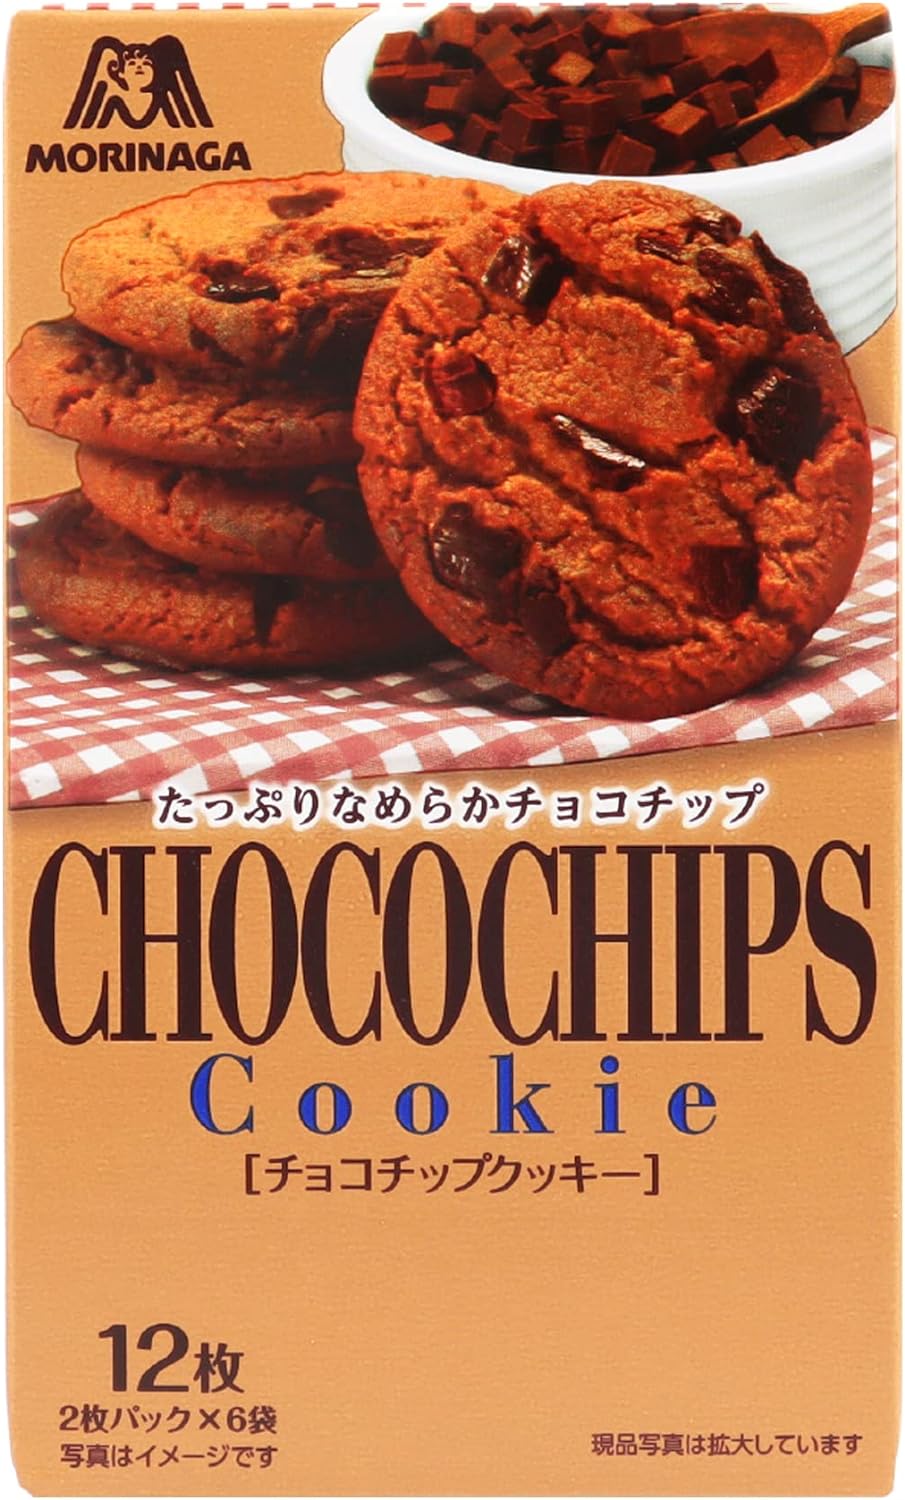 クッキーやケーキなどの「焼き菓子系チョコ」